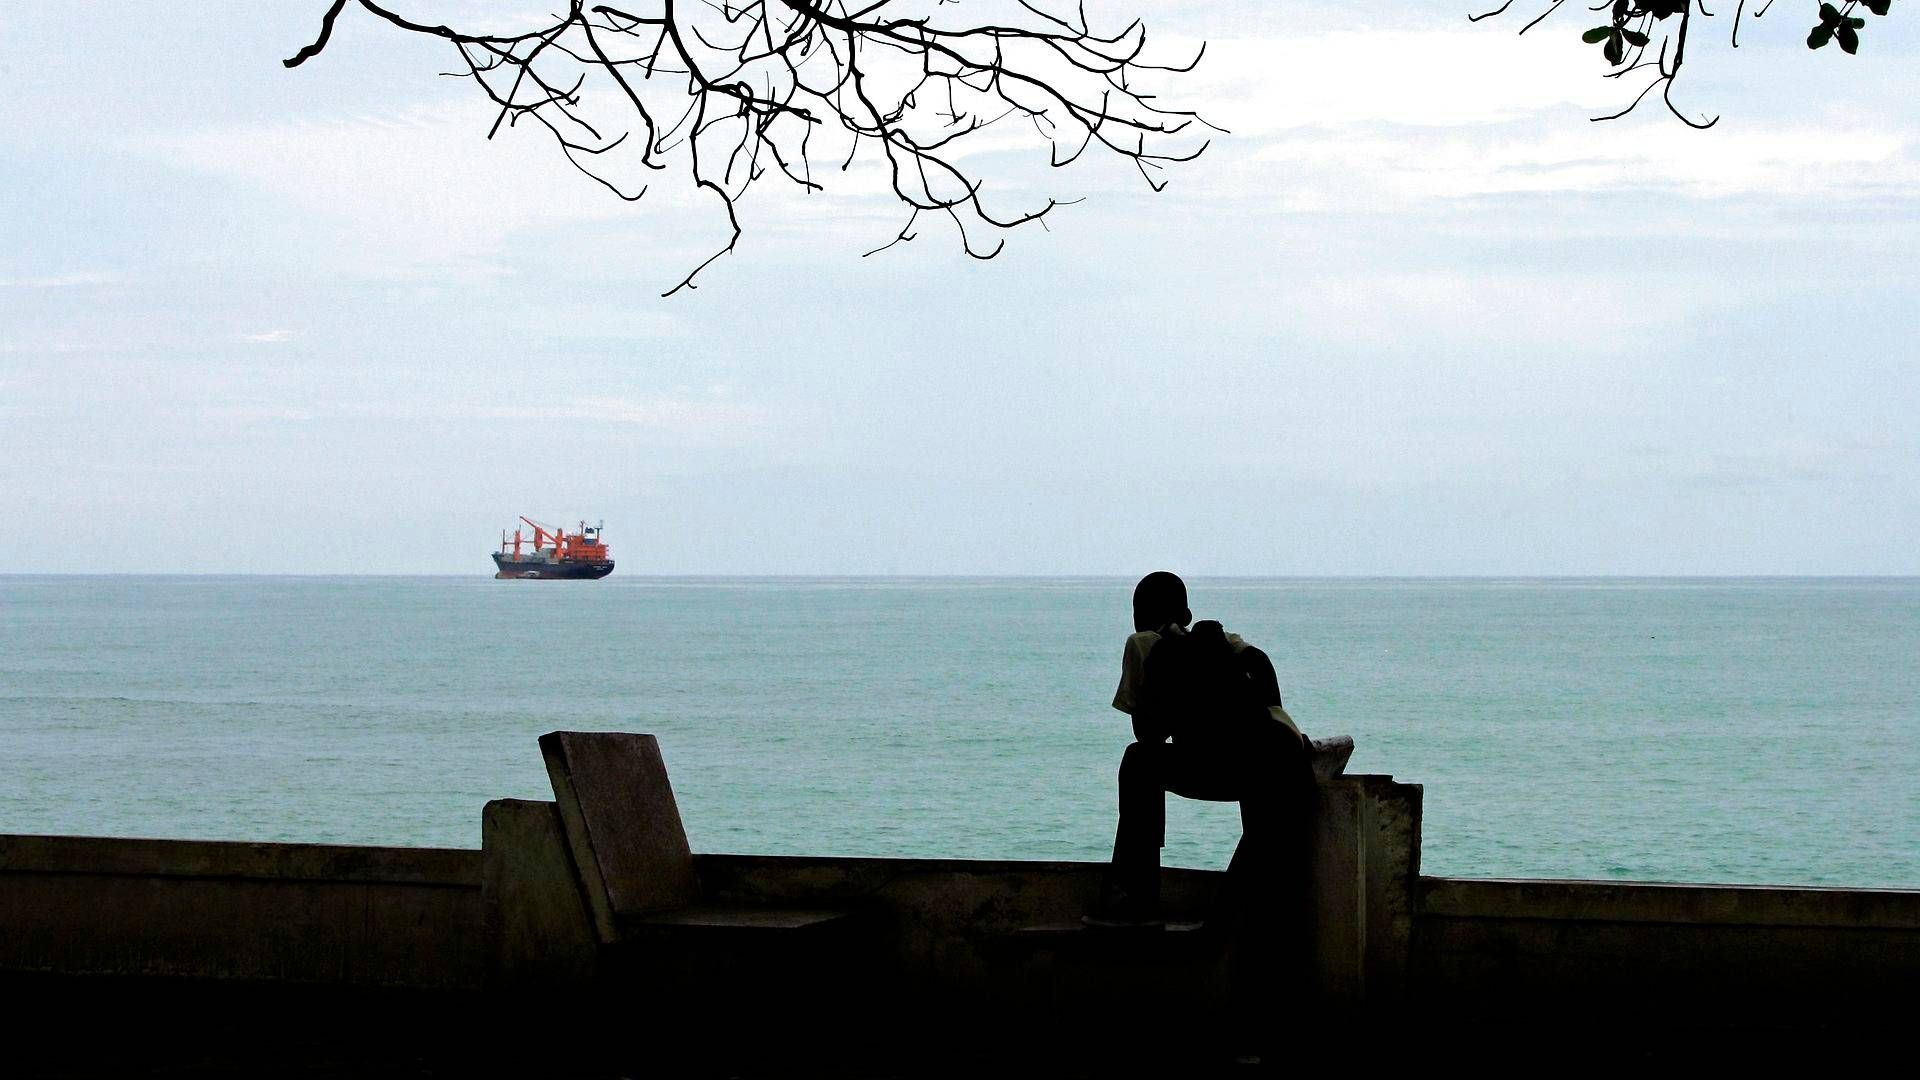 En skoledreng kigger på et handelsskib i Guineabugten i dette arkivbillede. Billedet viser ikke pirater eller det omtalte skib. | Foto: Armando Franca/AP/Ritzau Scanpix